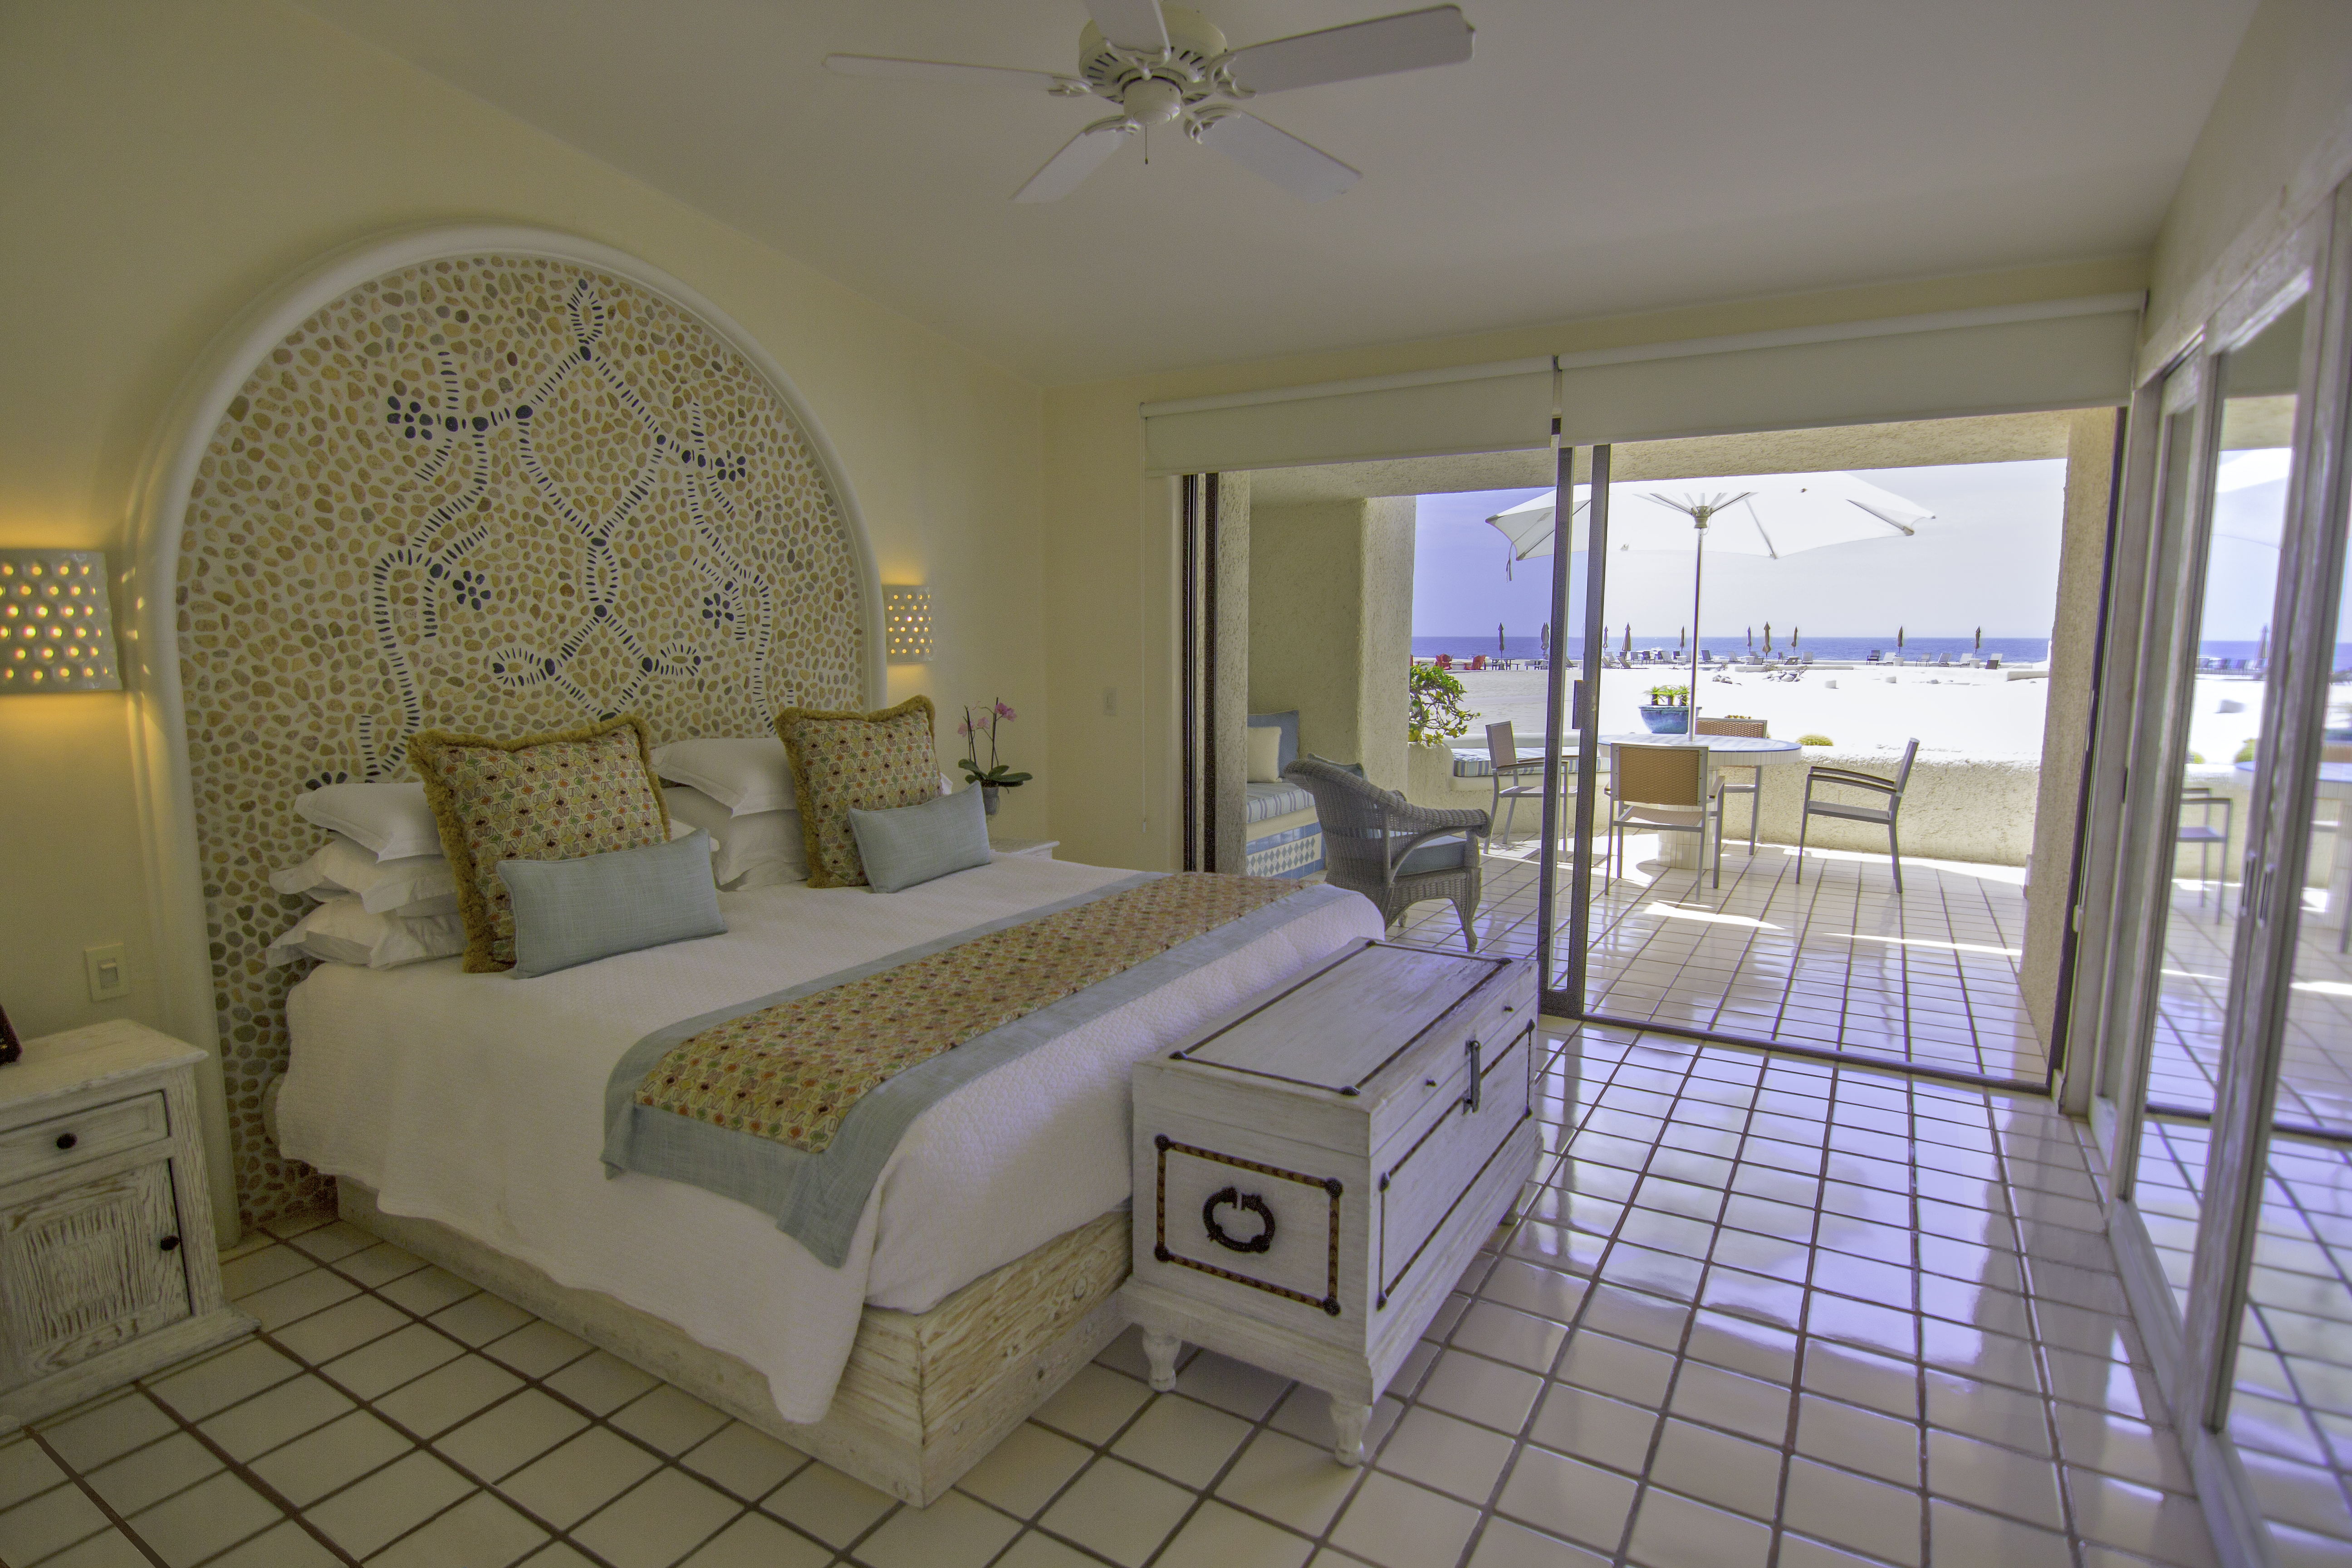 bedroom of terrasol beachfront resort condo for rent in cabo san lucas